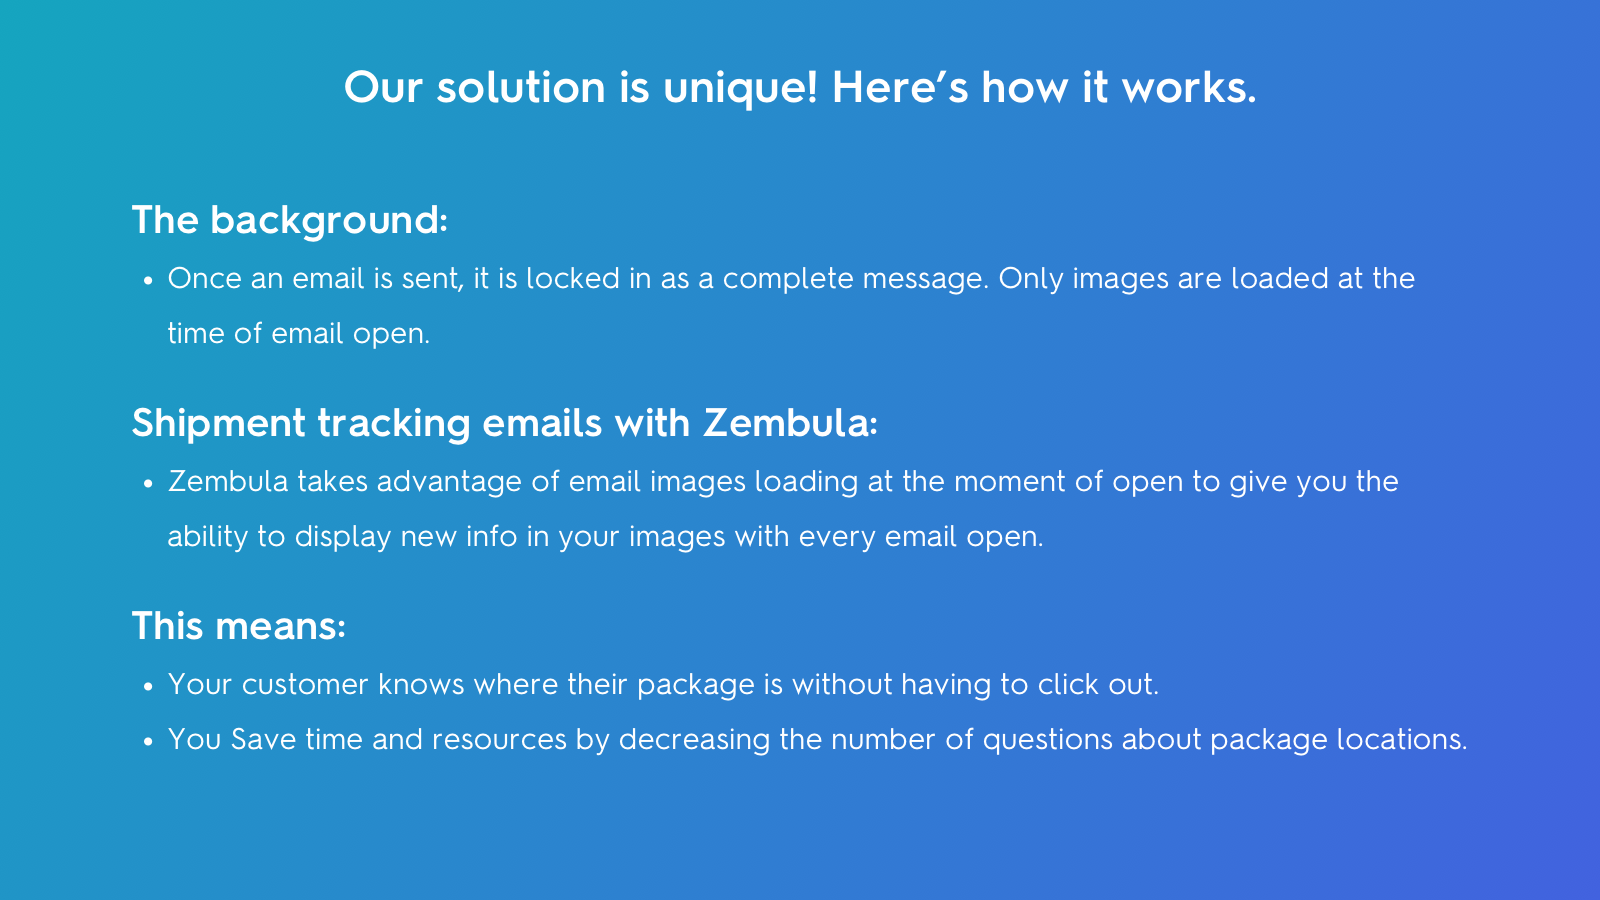 Sådan fungerer Zembula: Billeder indlæses ved hver e-mail-åbning. 